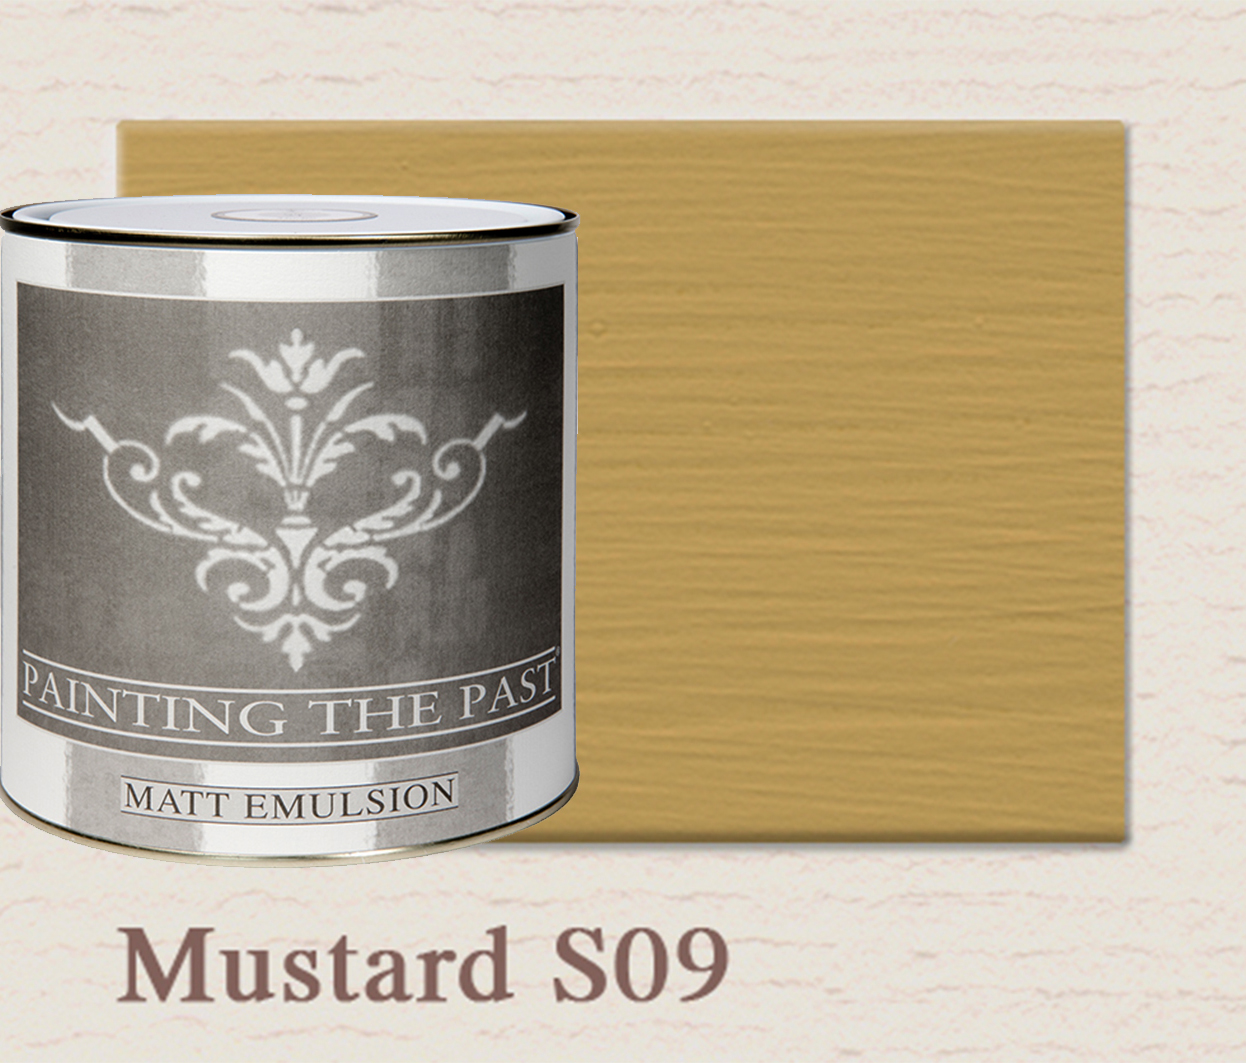 Painting The Past Matt Emulsion Mustard